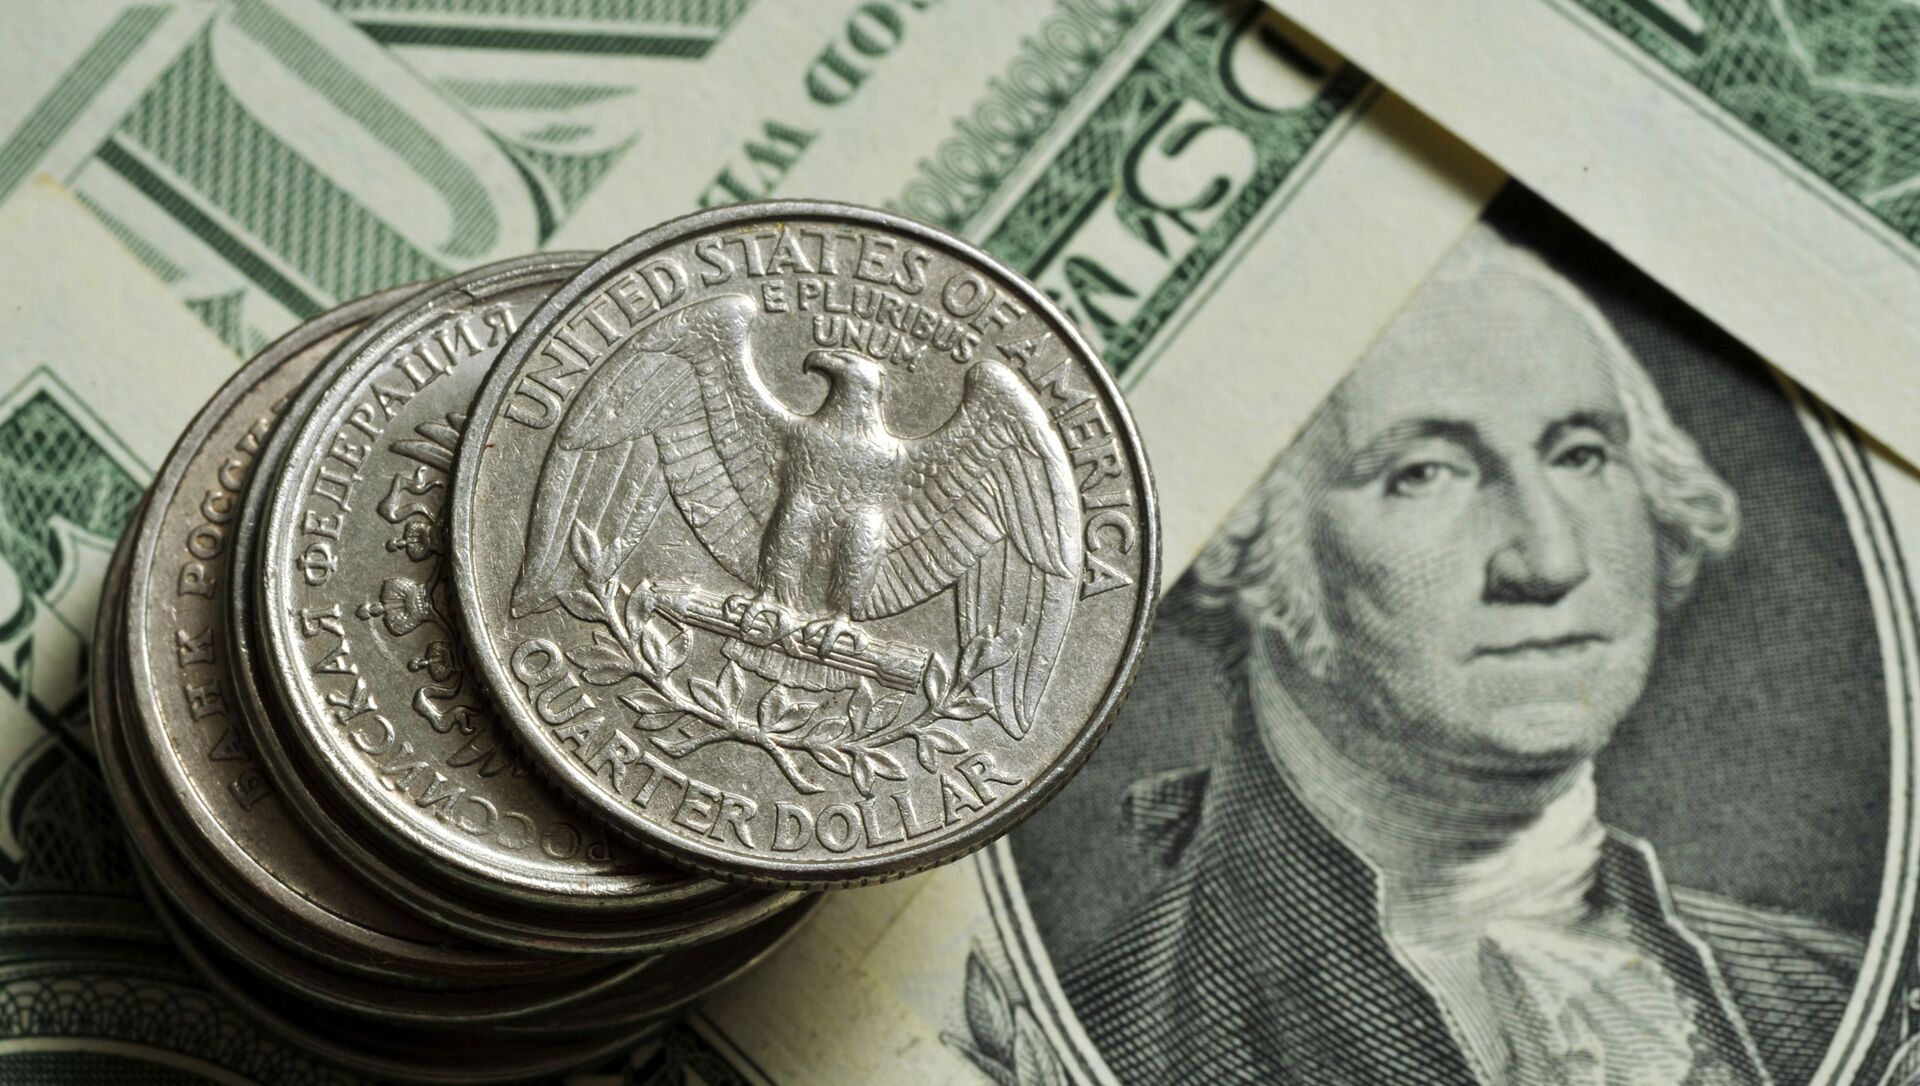 Монеты различного номинала Монетного двора США на фоне банкноты номиналом 1 доллар США. - Sputnik Армения, 1920, 29.04.2021